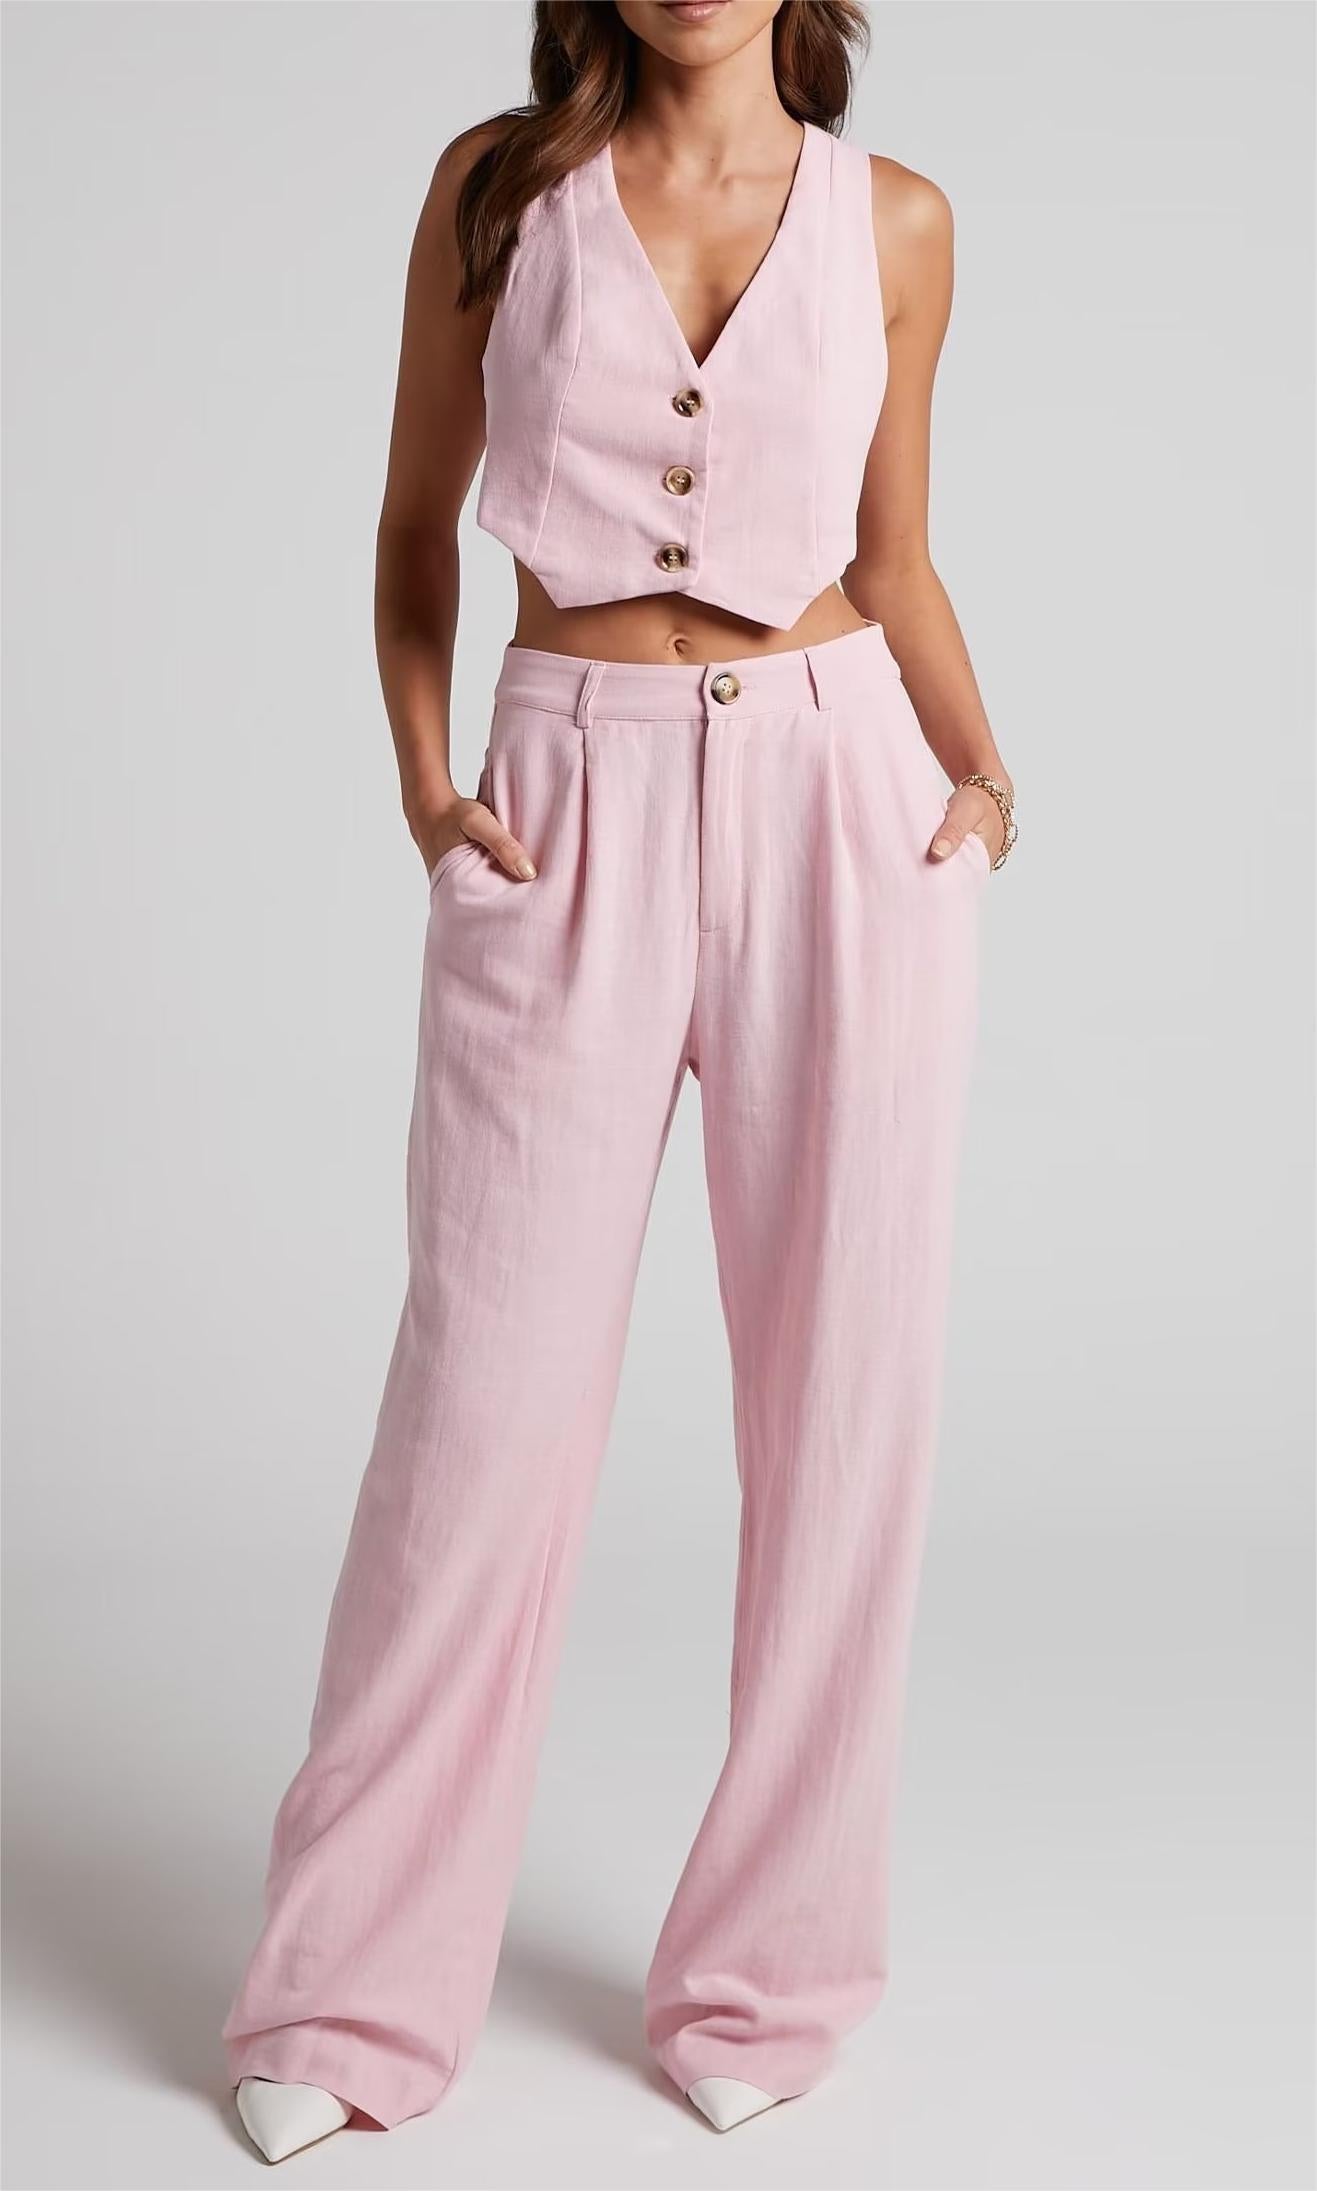 Summer Outfits  Light Pink Vest Wide Leg Pants Outfit 2-piece Set – TGC  FASHION